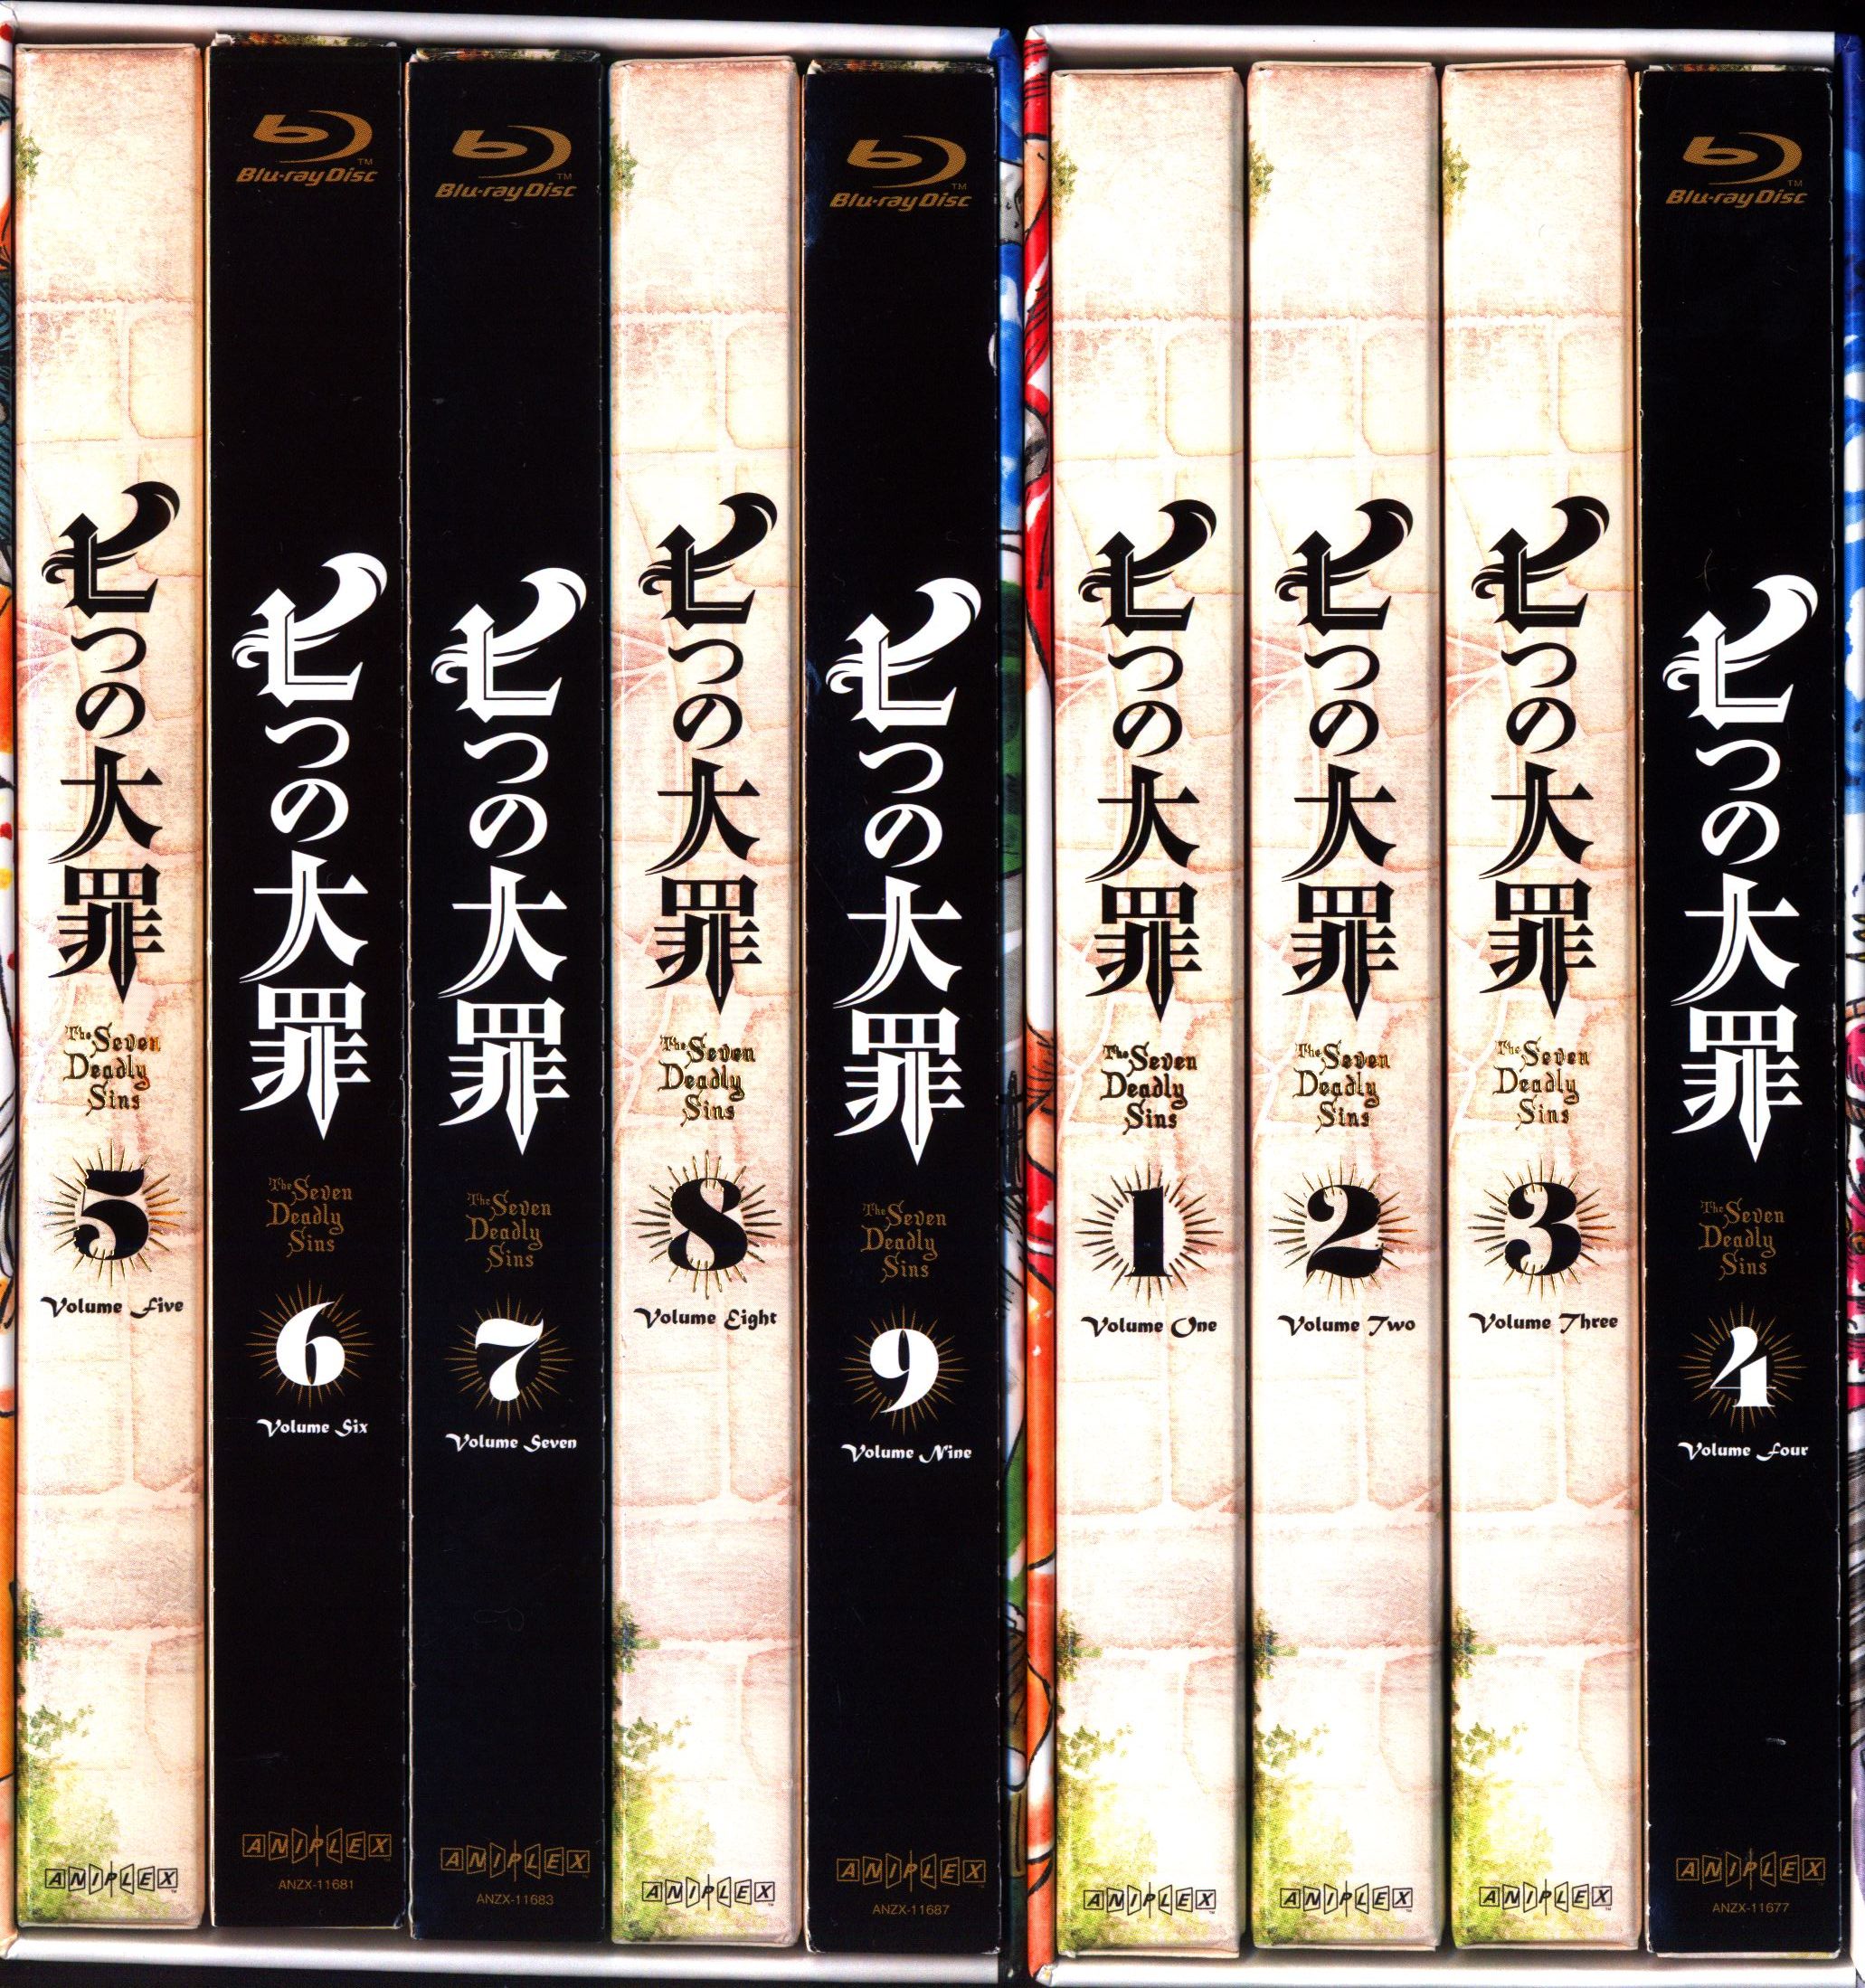 スノーブルー 「七つの大罪」(第1期) Blu-rayセット ANIPLEX